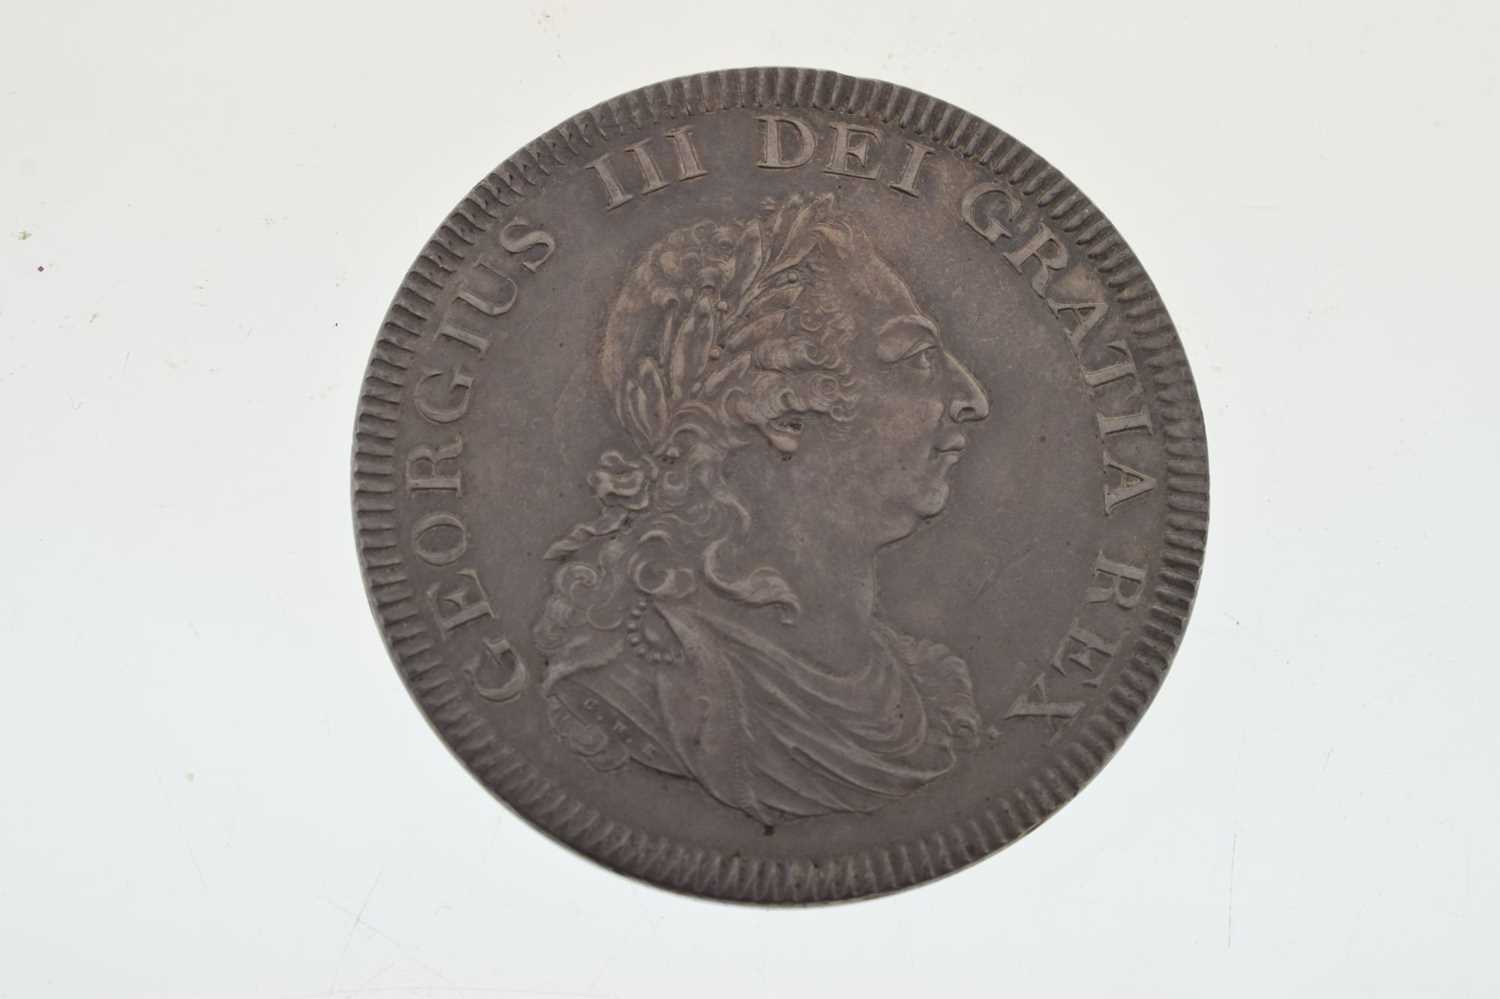 George III Bank of England Five Shillings Dollar, 1804 - Image 3 of 4